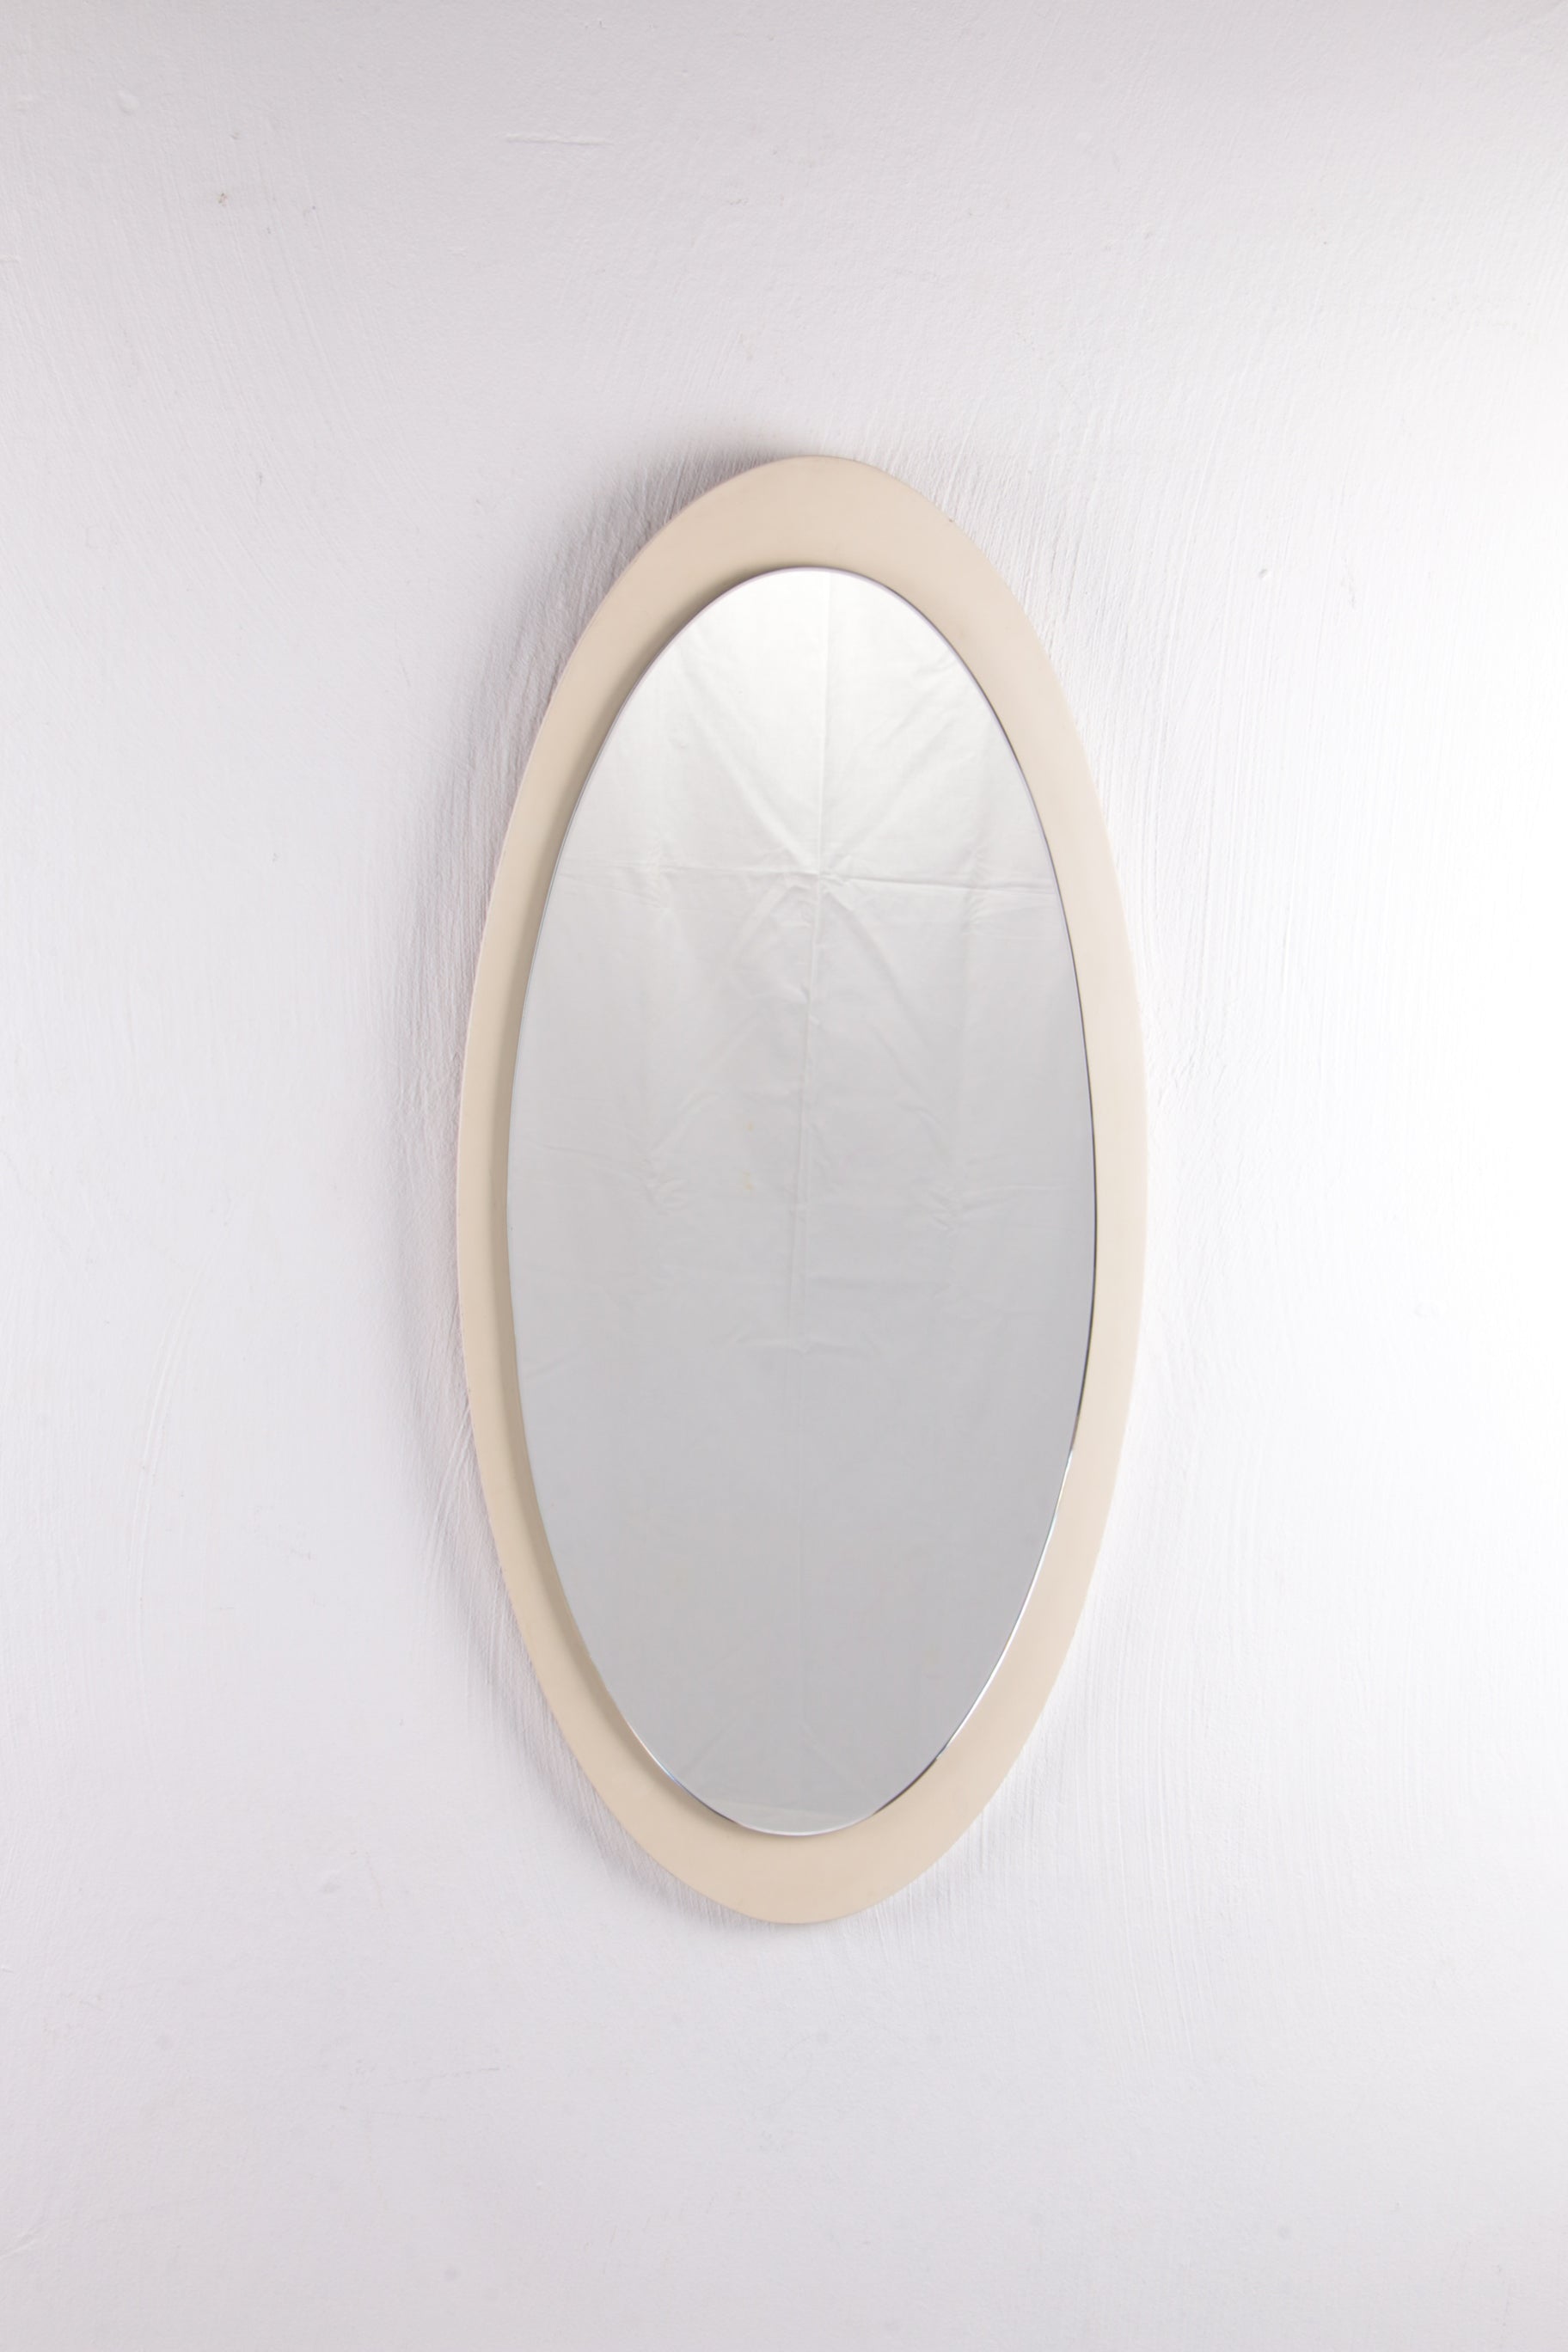 Kritisch Asser Carrière Vintage Grote wit houten Ovale Wandspiegel jaren60s – Timeless-Art